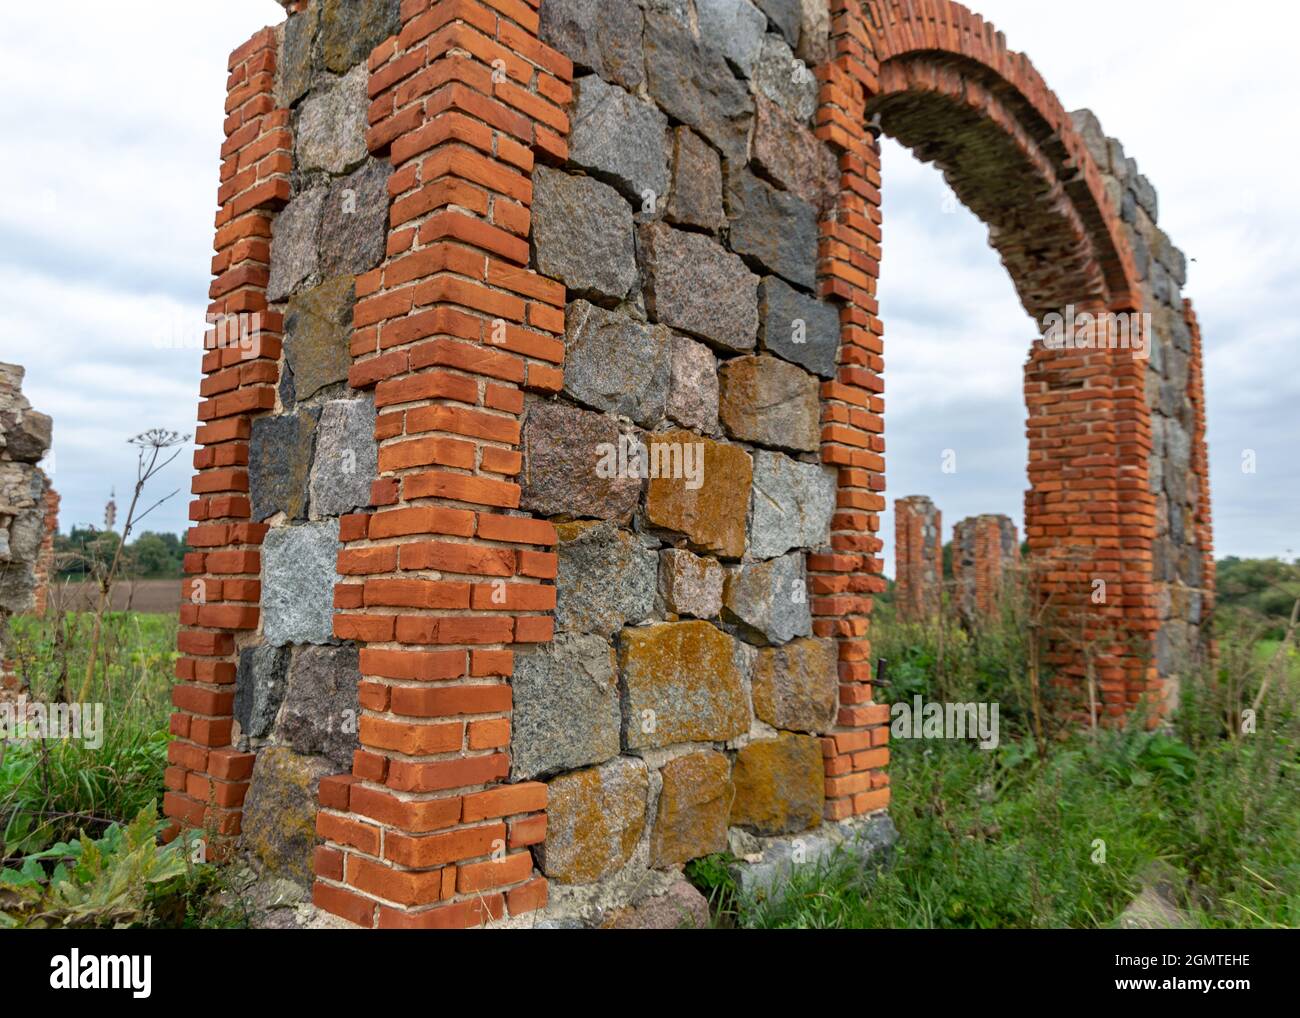 paesaggio con ruderi in pietra e mattoni, antiche fondamenta in pietra bricked con mattoni rossi Foto Stock